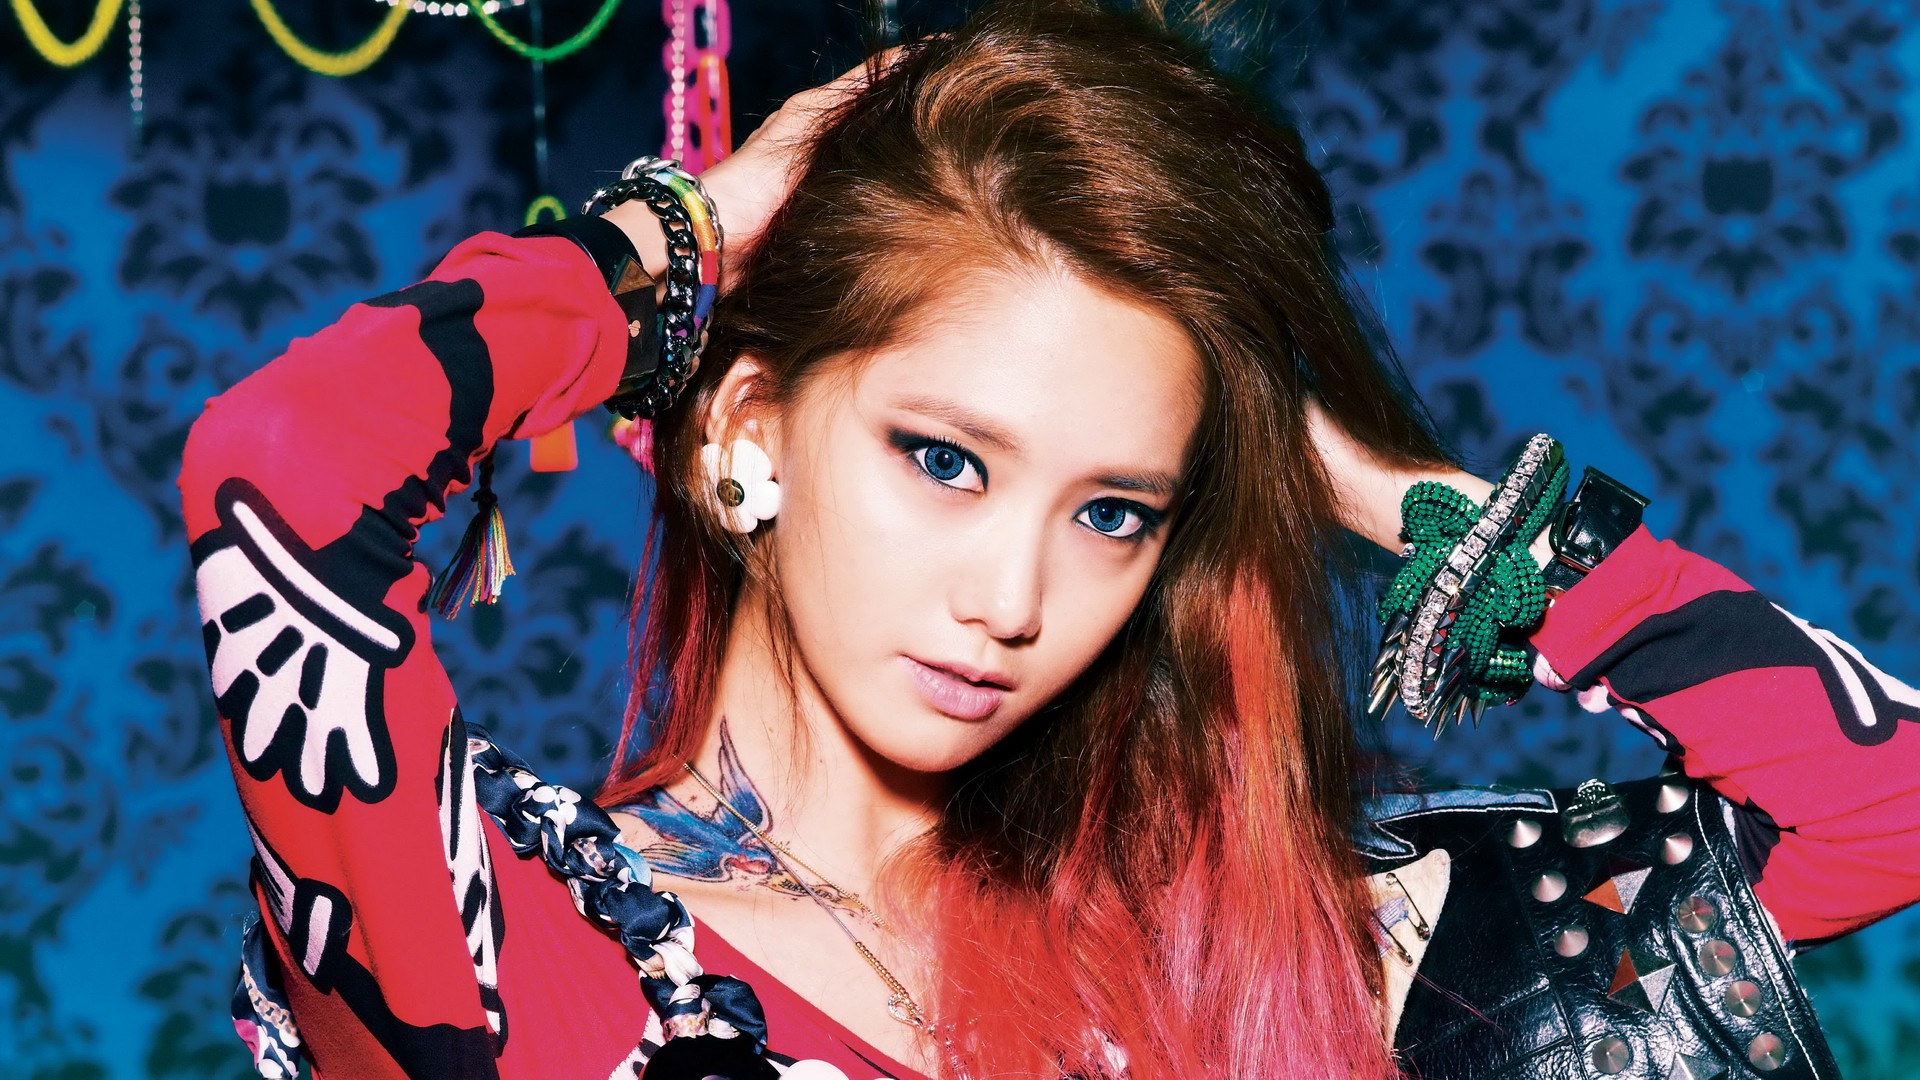 Wallpaper - Korean Pop Girls Wallpaper Hd , HD Wallpaper & Backgrounds